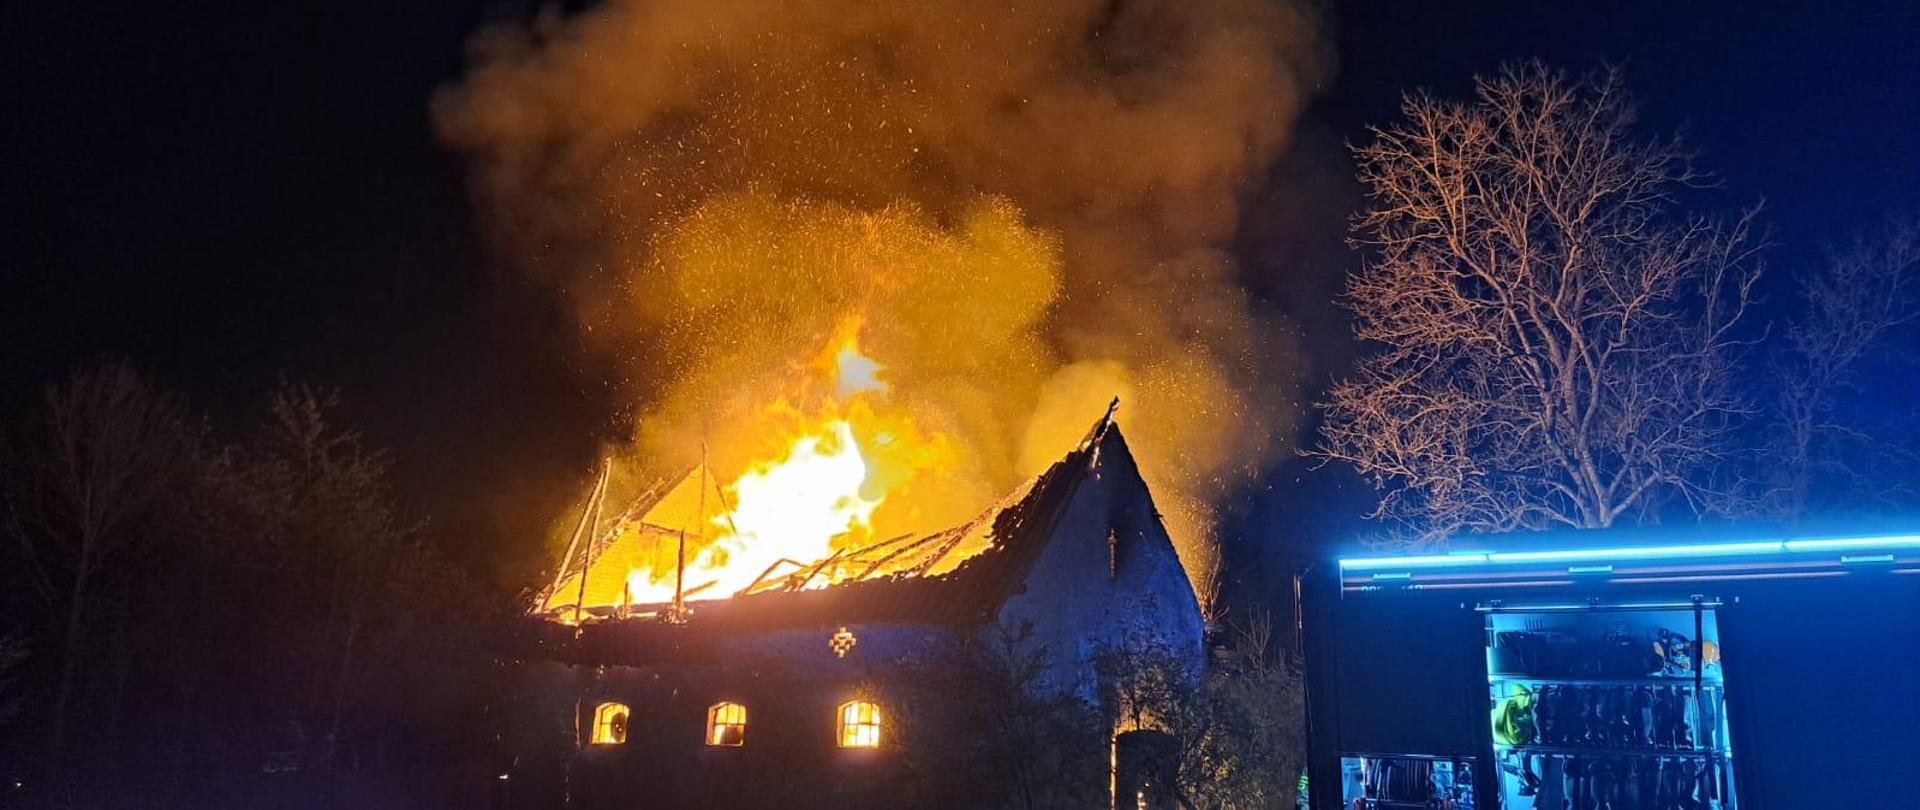 Zdjęcie przedstawia obiekt gospodarczy w całości objęty ogniem. Widoczny jest słup ognia wydobywający się z wnętrza budynku. Dach zawalił się do środka